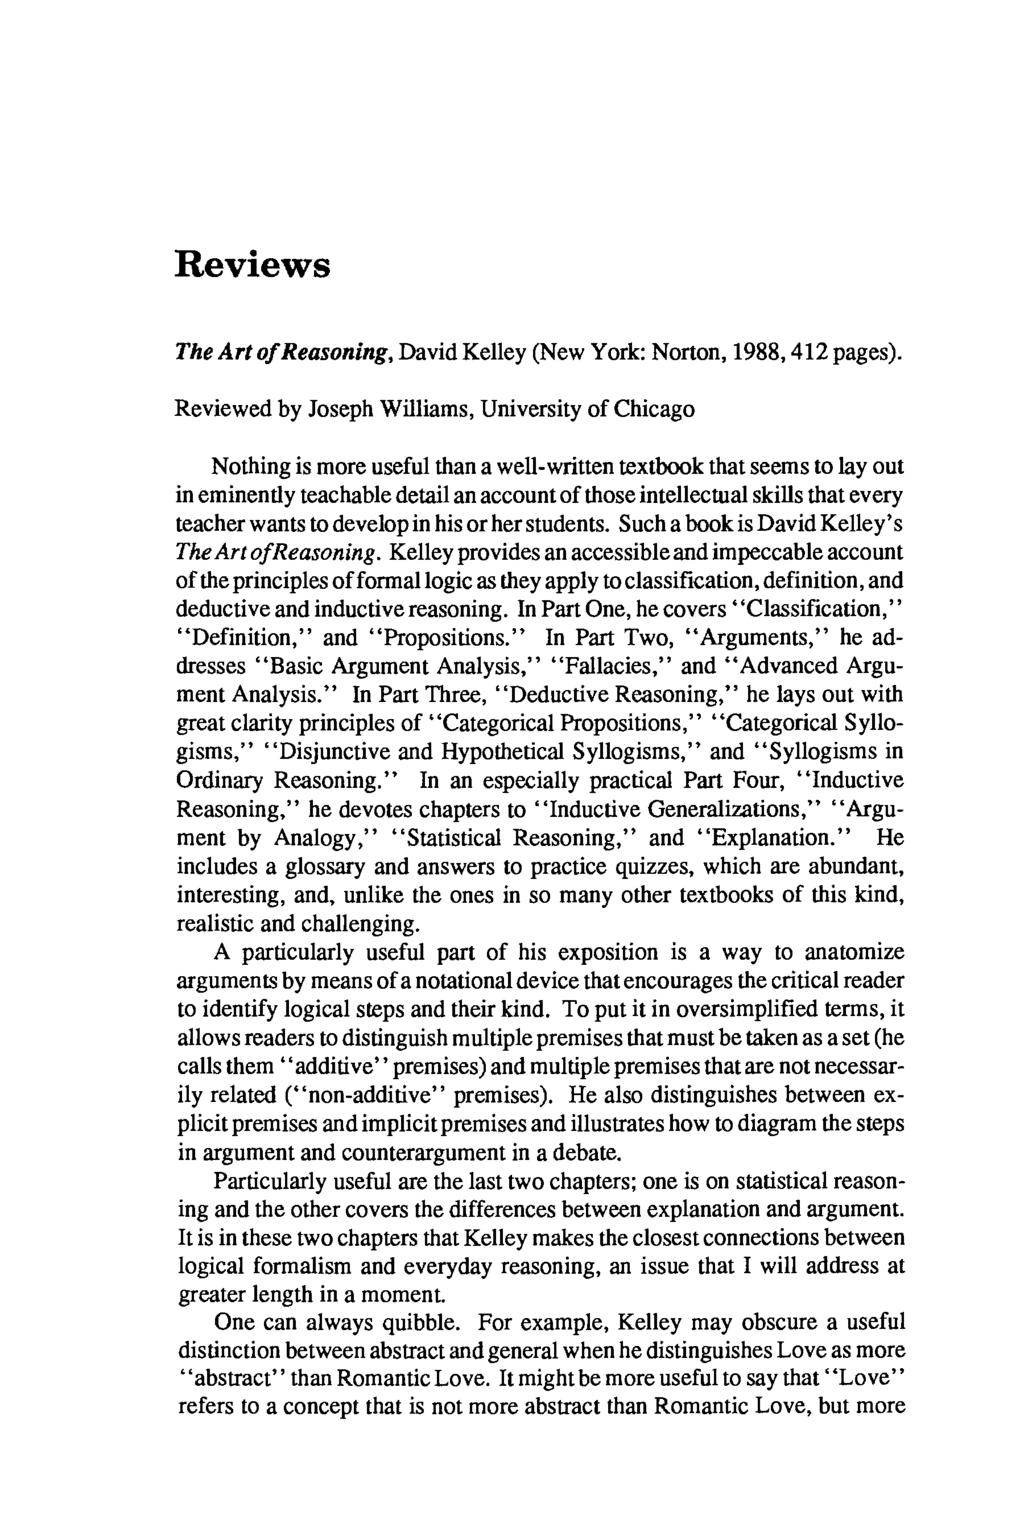 Reviews The Art of Reasoning, David Kelley (New York: Norton, 1988,412 pages).